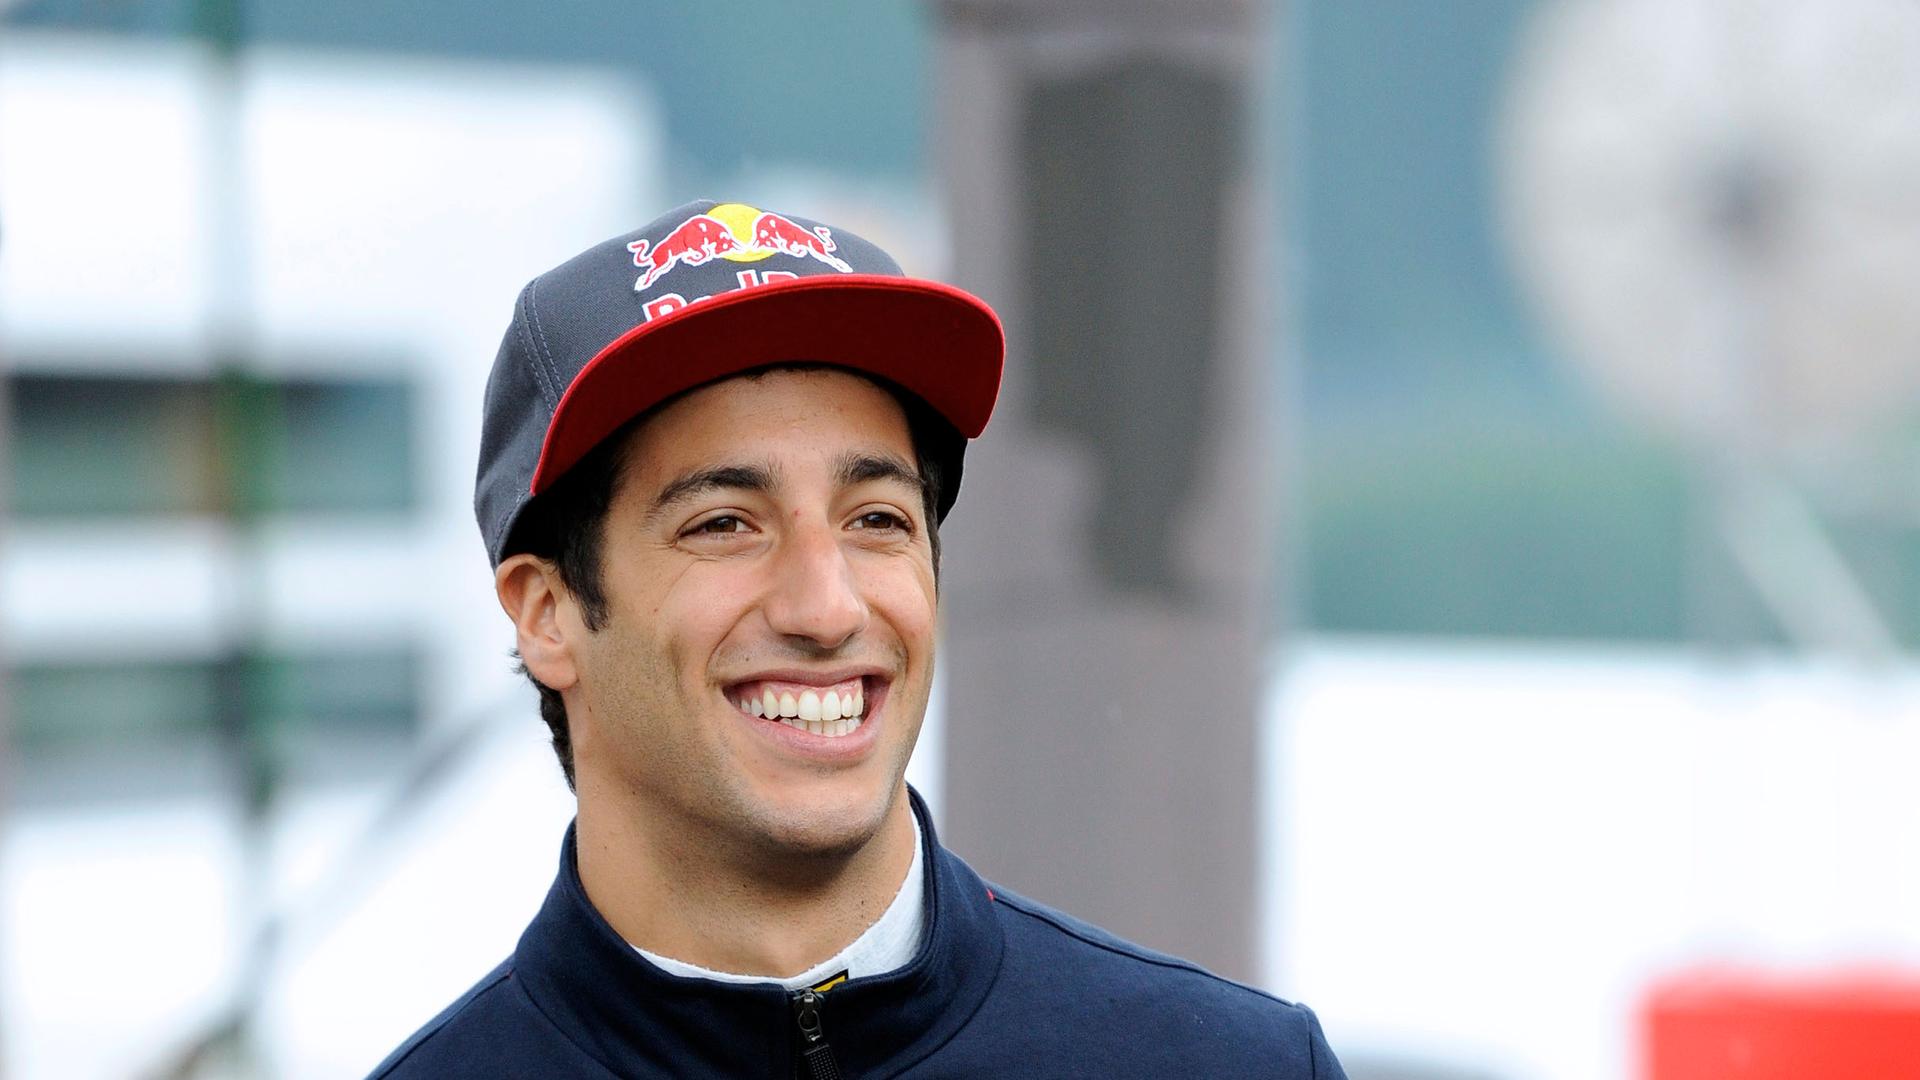 Daniel Ricciardo, Scuderia Toro Rosso, formula 1 GP, Belgien in Spa, 24.08.2013
Photo:mspb/ Jerry Andre